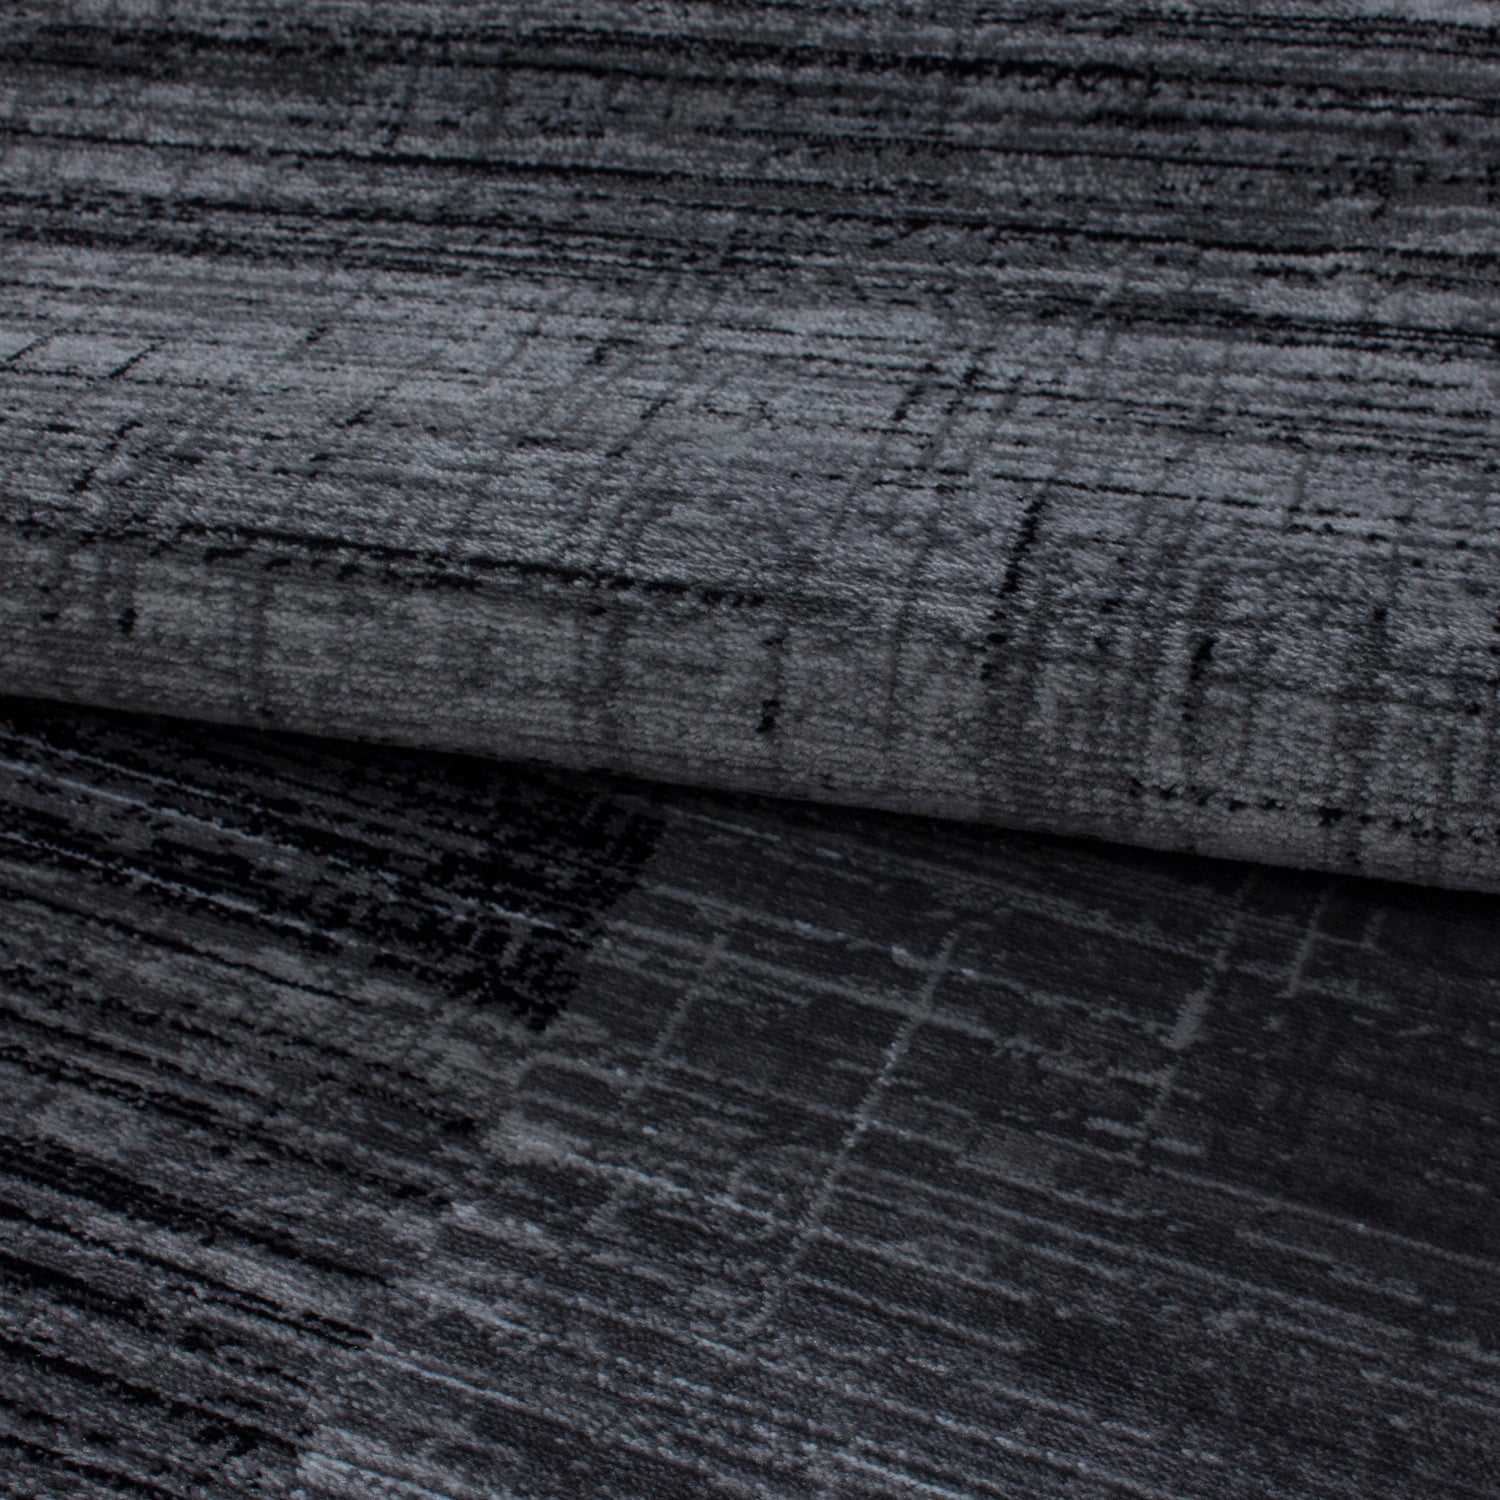 Teppich Bettumrandung 3 Teile Läufer Kurzflor Set Grau Schwarz meliert